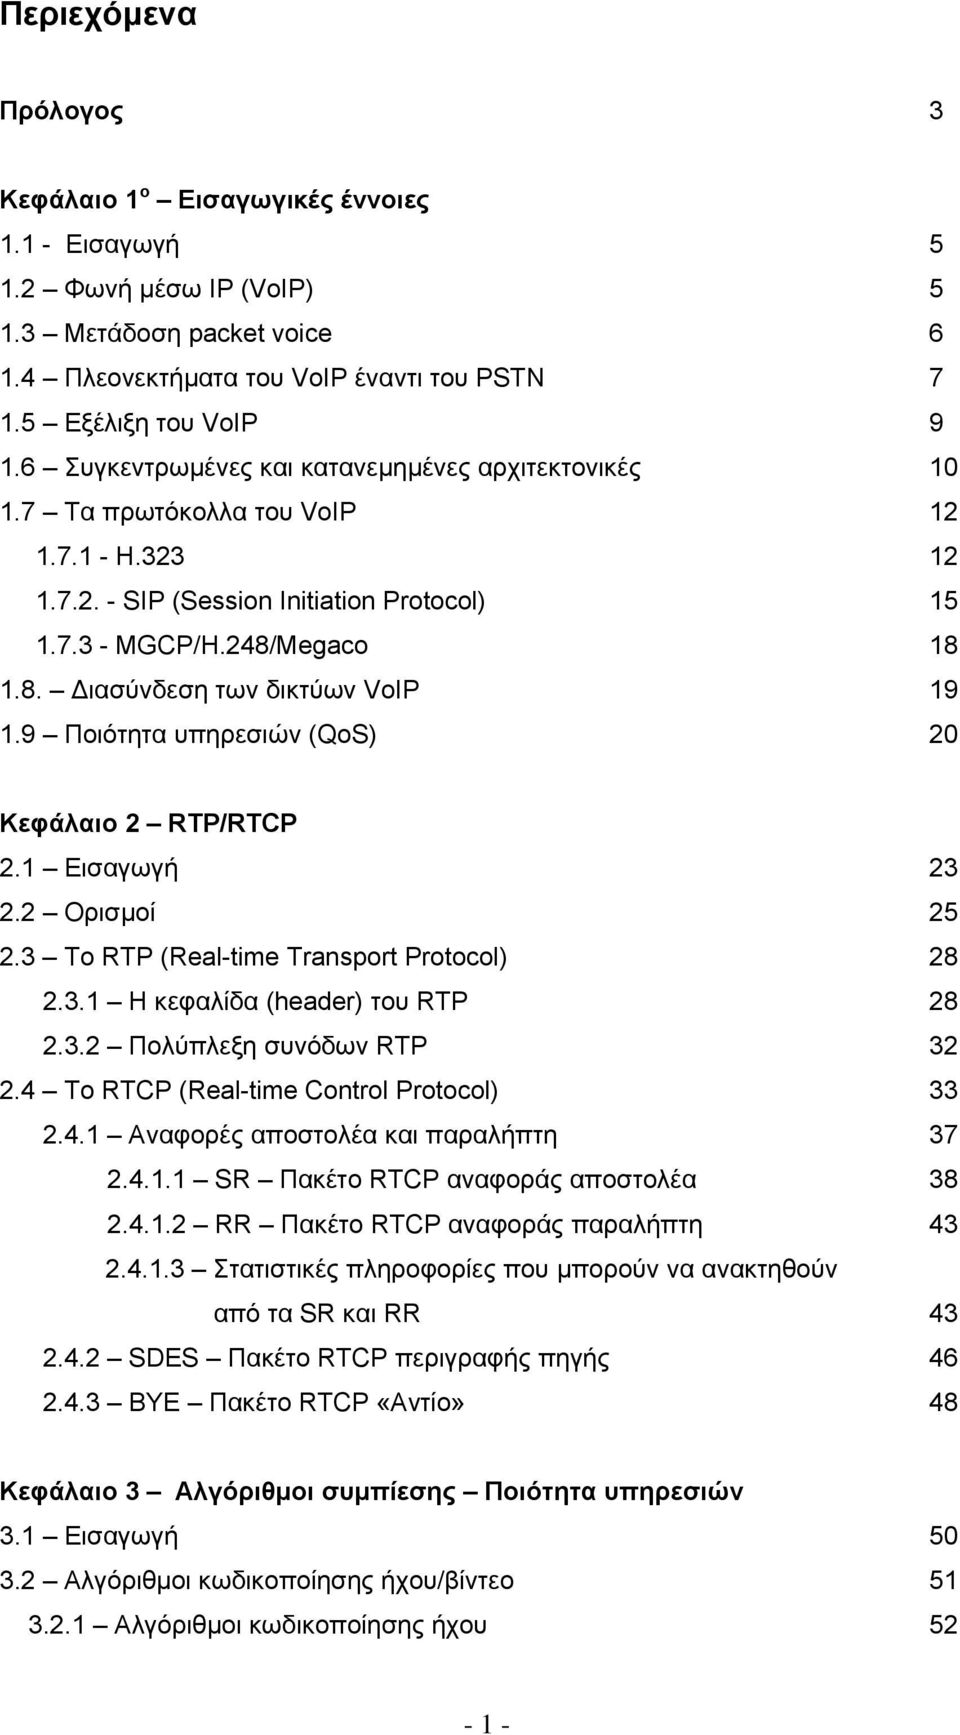 9 Ποιότητα υπηρεσιών (QoS) 20 Κεφάλαιο 2 RTP/RTCP 2.1 Εισαγωγή 23 2.2 Ορισµοί 25 2.3 To RTP (Real-time Transport Protocol) 28 2.3.1 Η κεφαλίδα (header) του RTP 28 2.3.2 Πολύπλεξη συνόδων RTP 32 2.